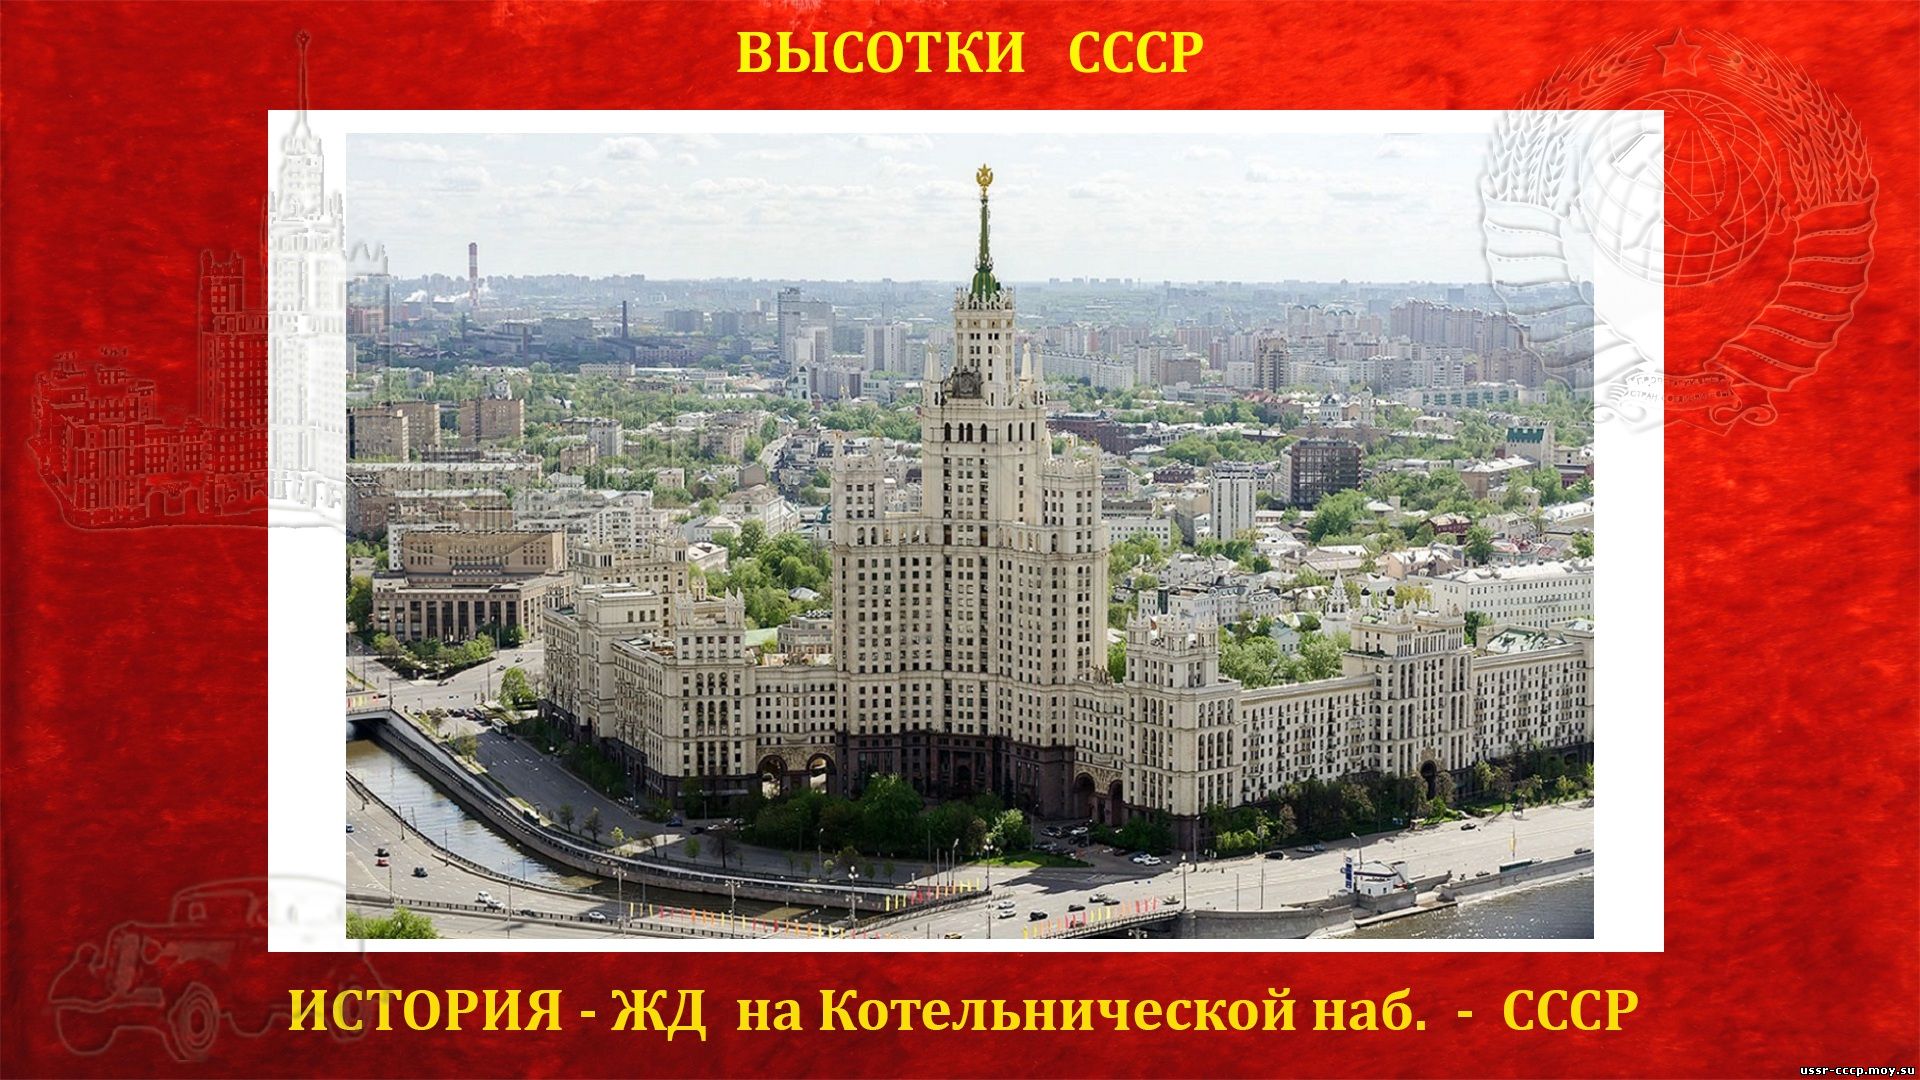 Жилой дом на Котельнической набережной (Москва) (повествование)